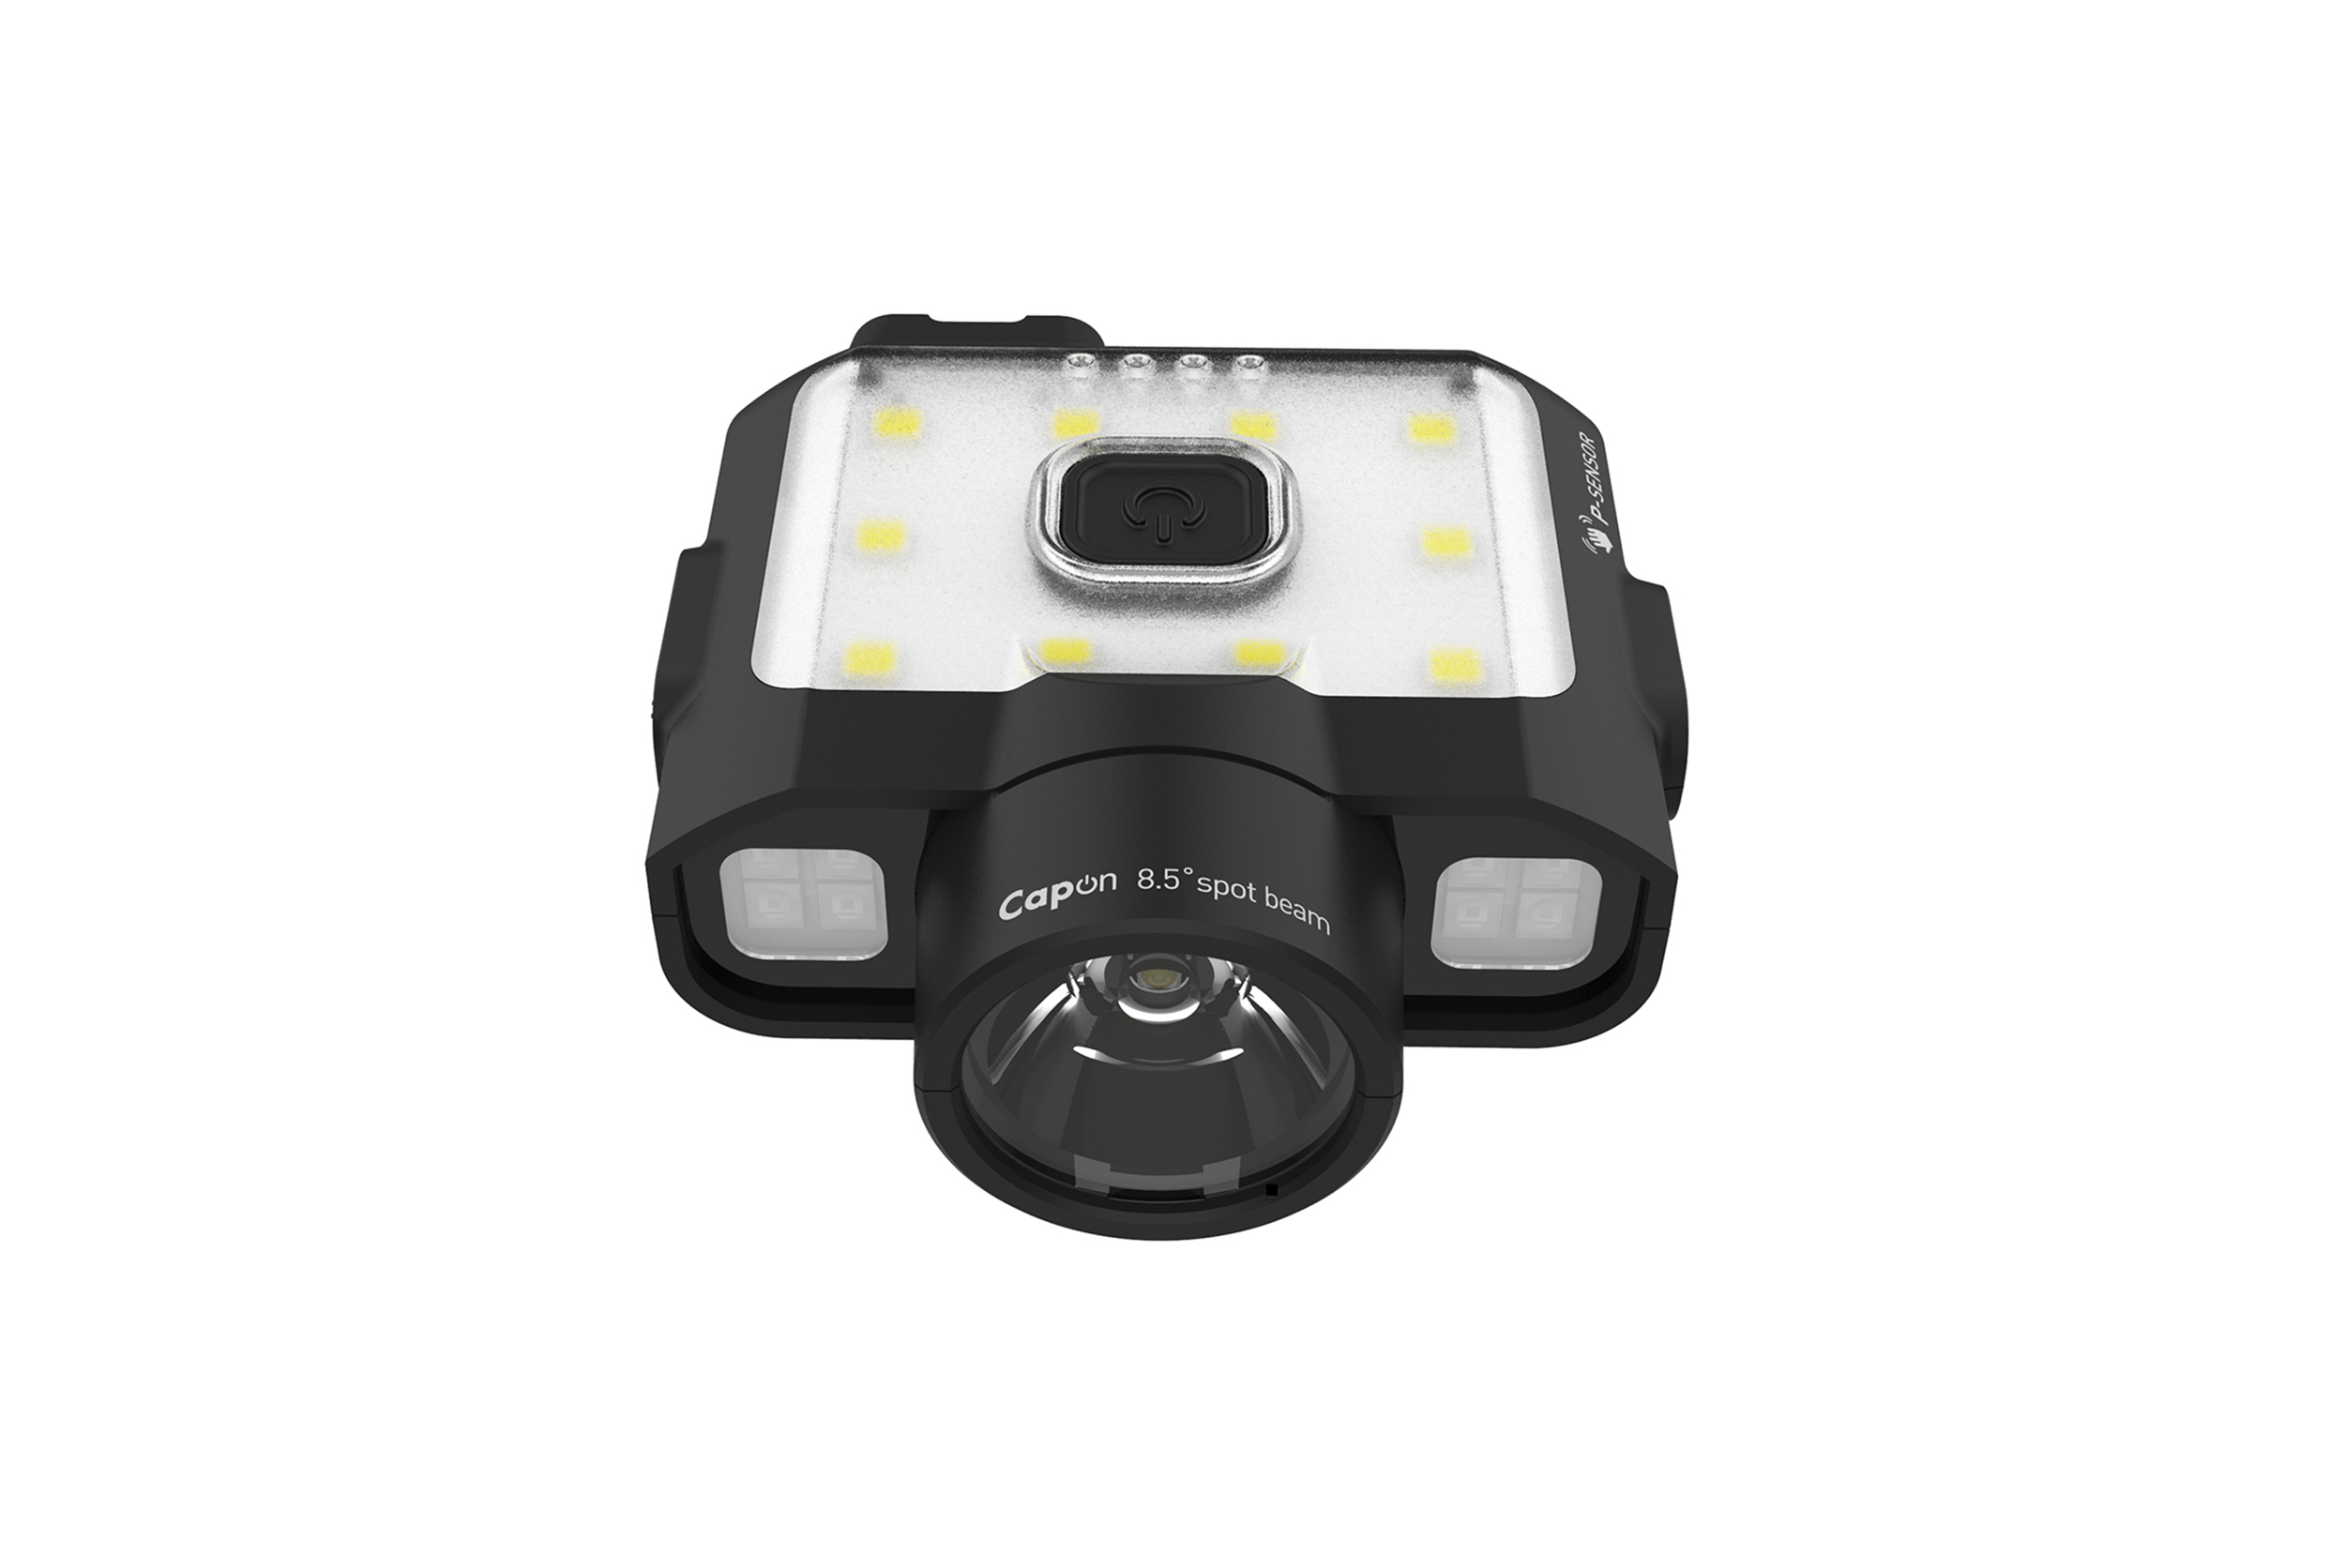 Cap Light / caplight / Head Light / Headlight / Capon / Canada Light / Motion Sensor / Motion sensor light